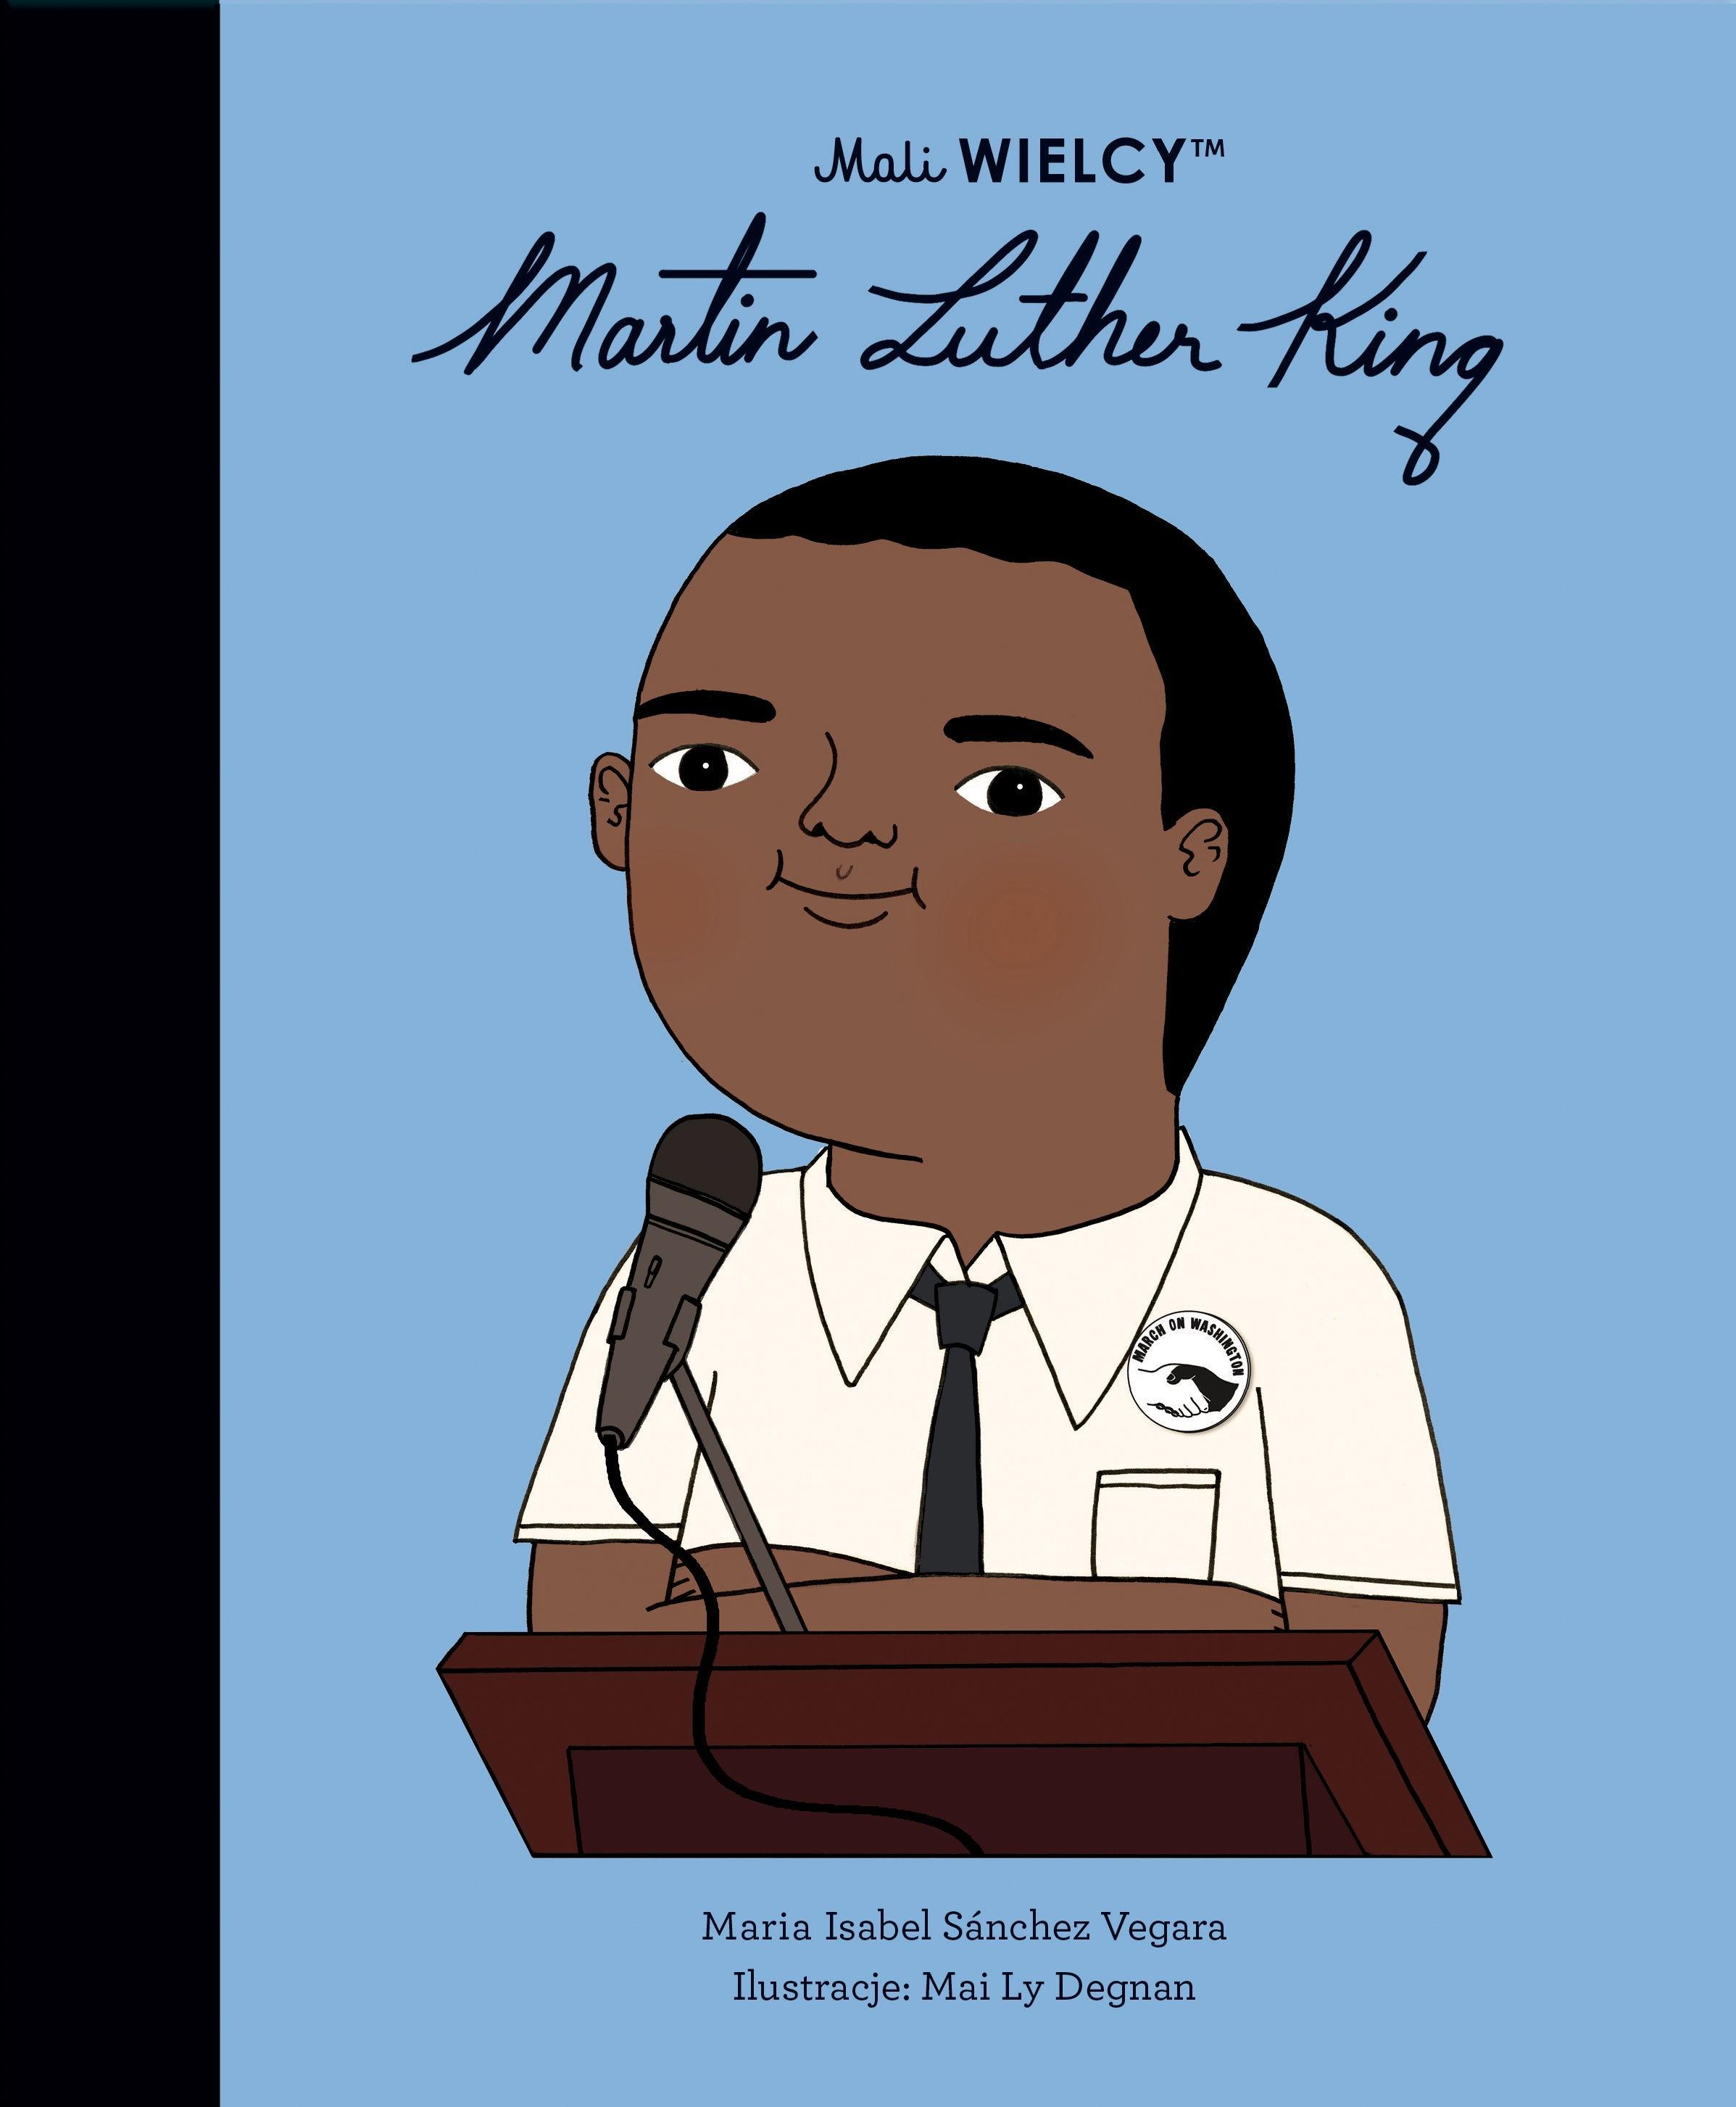 Smart Books: Mali WIELCY. Martin Luther King - Noski Noski